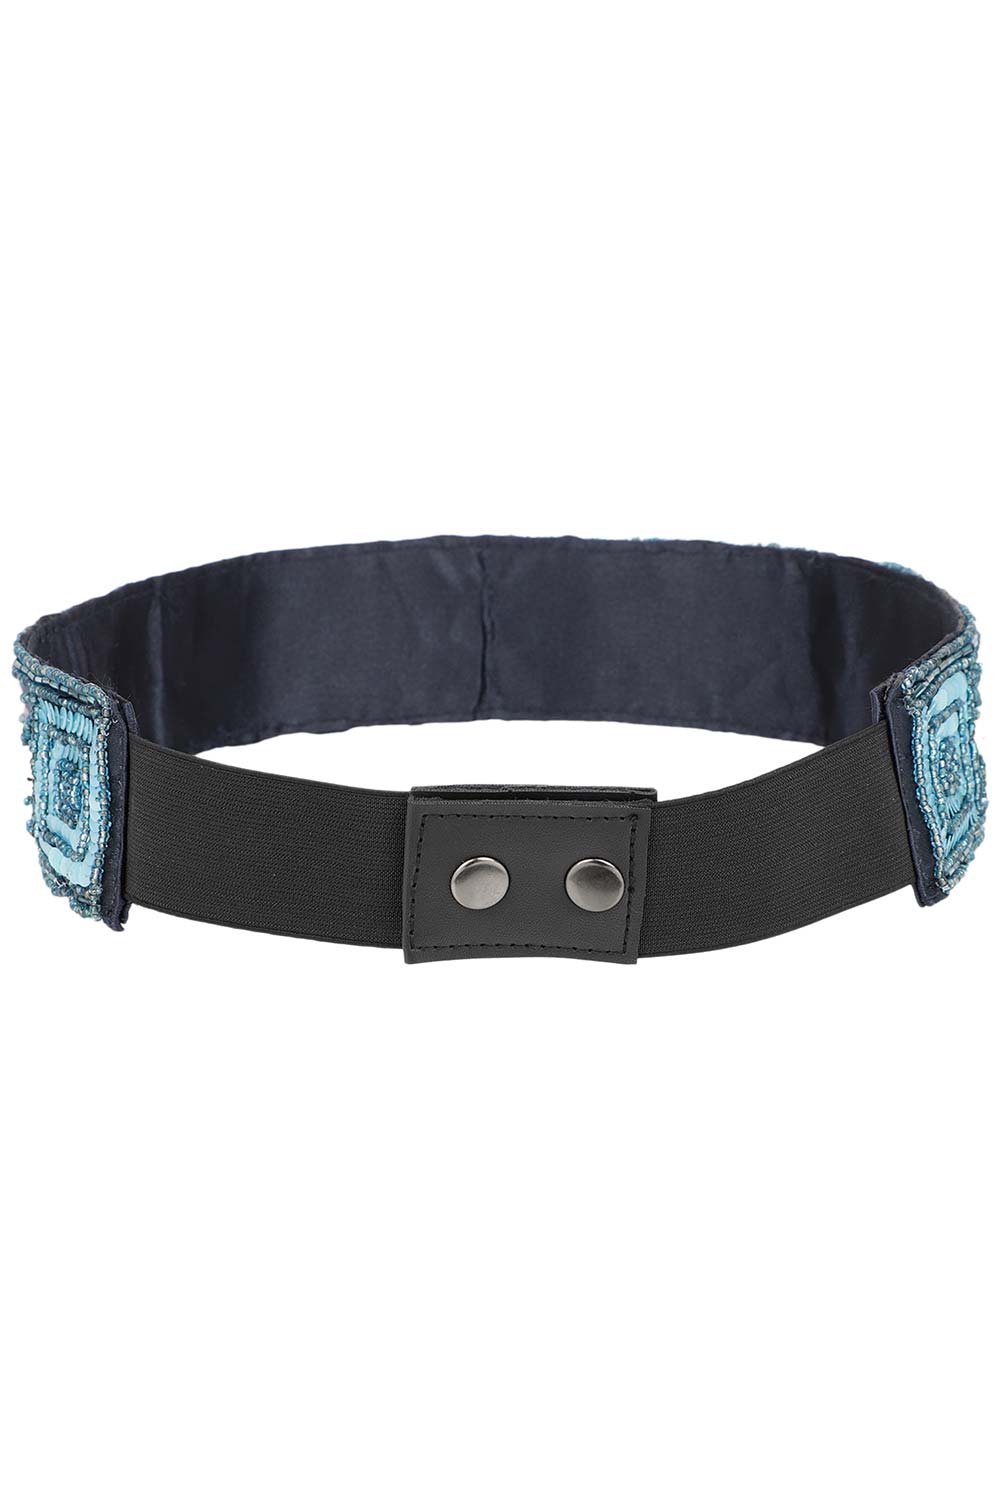 Embellished Saree Belt in Black & Blue